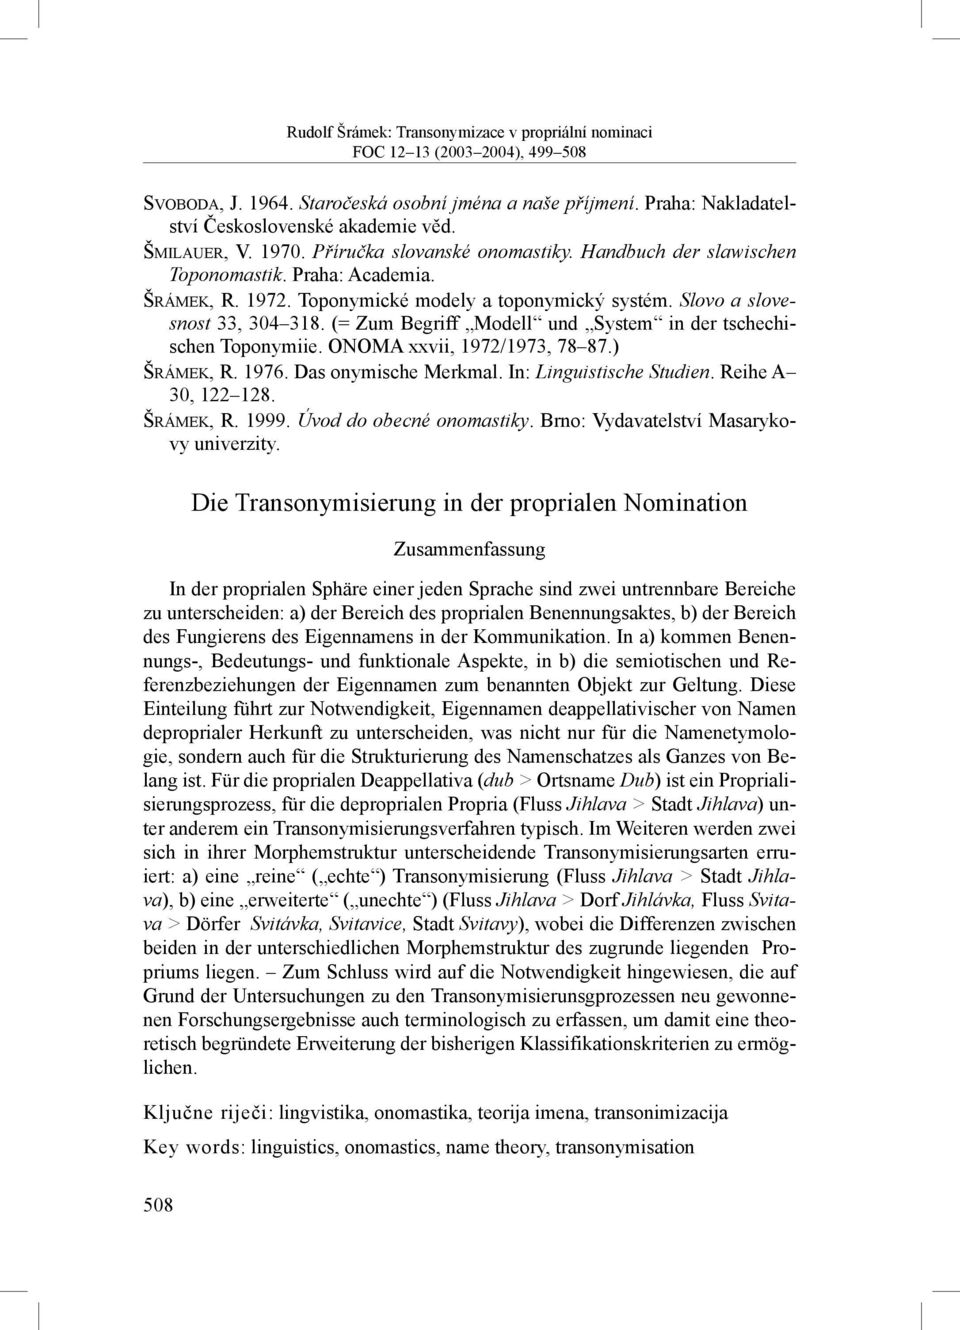 ONOMA xxvii, 1972/1973, 78 87.) ŠRÁMEK, R. 1976. Das onymische Merkmal. In: Linguistische Studien. Reihe A 30, 122 128. ŠRÁMEK, R. 1999. Úvod do obecné onomastiky.